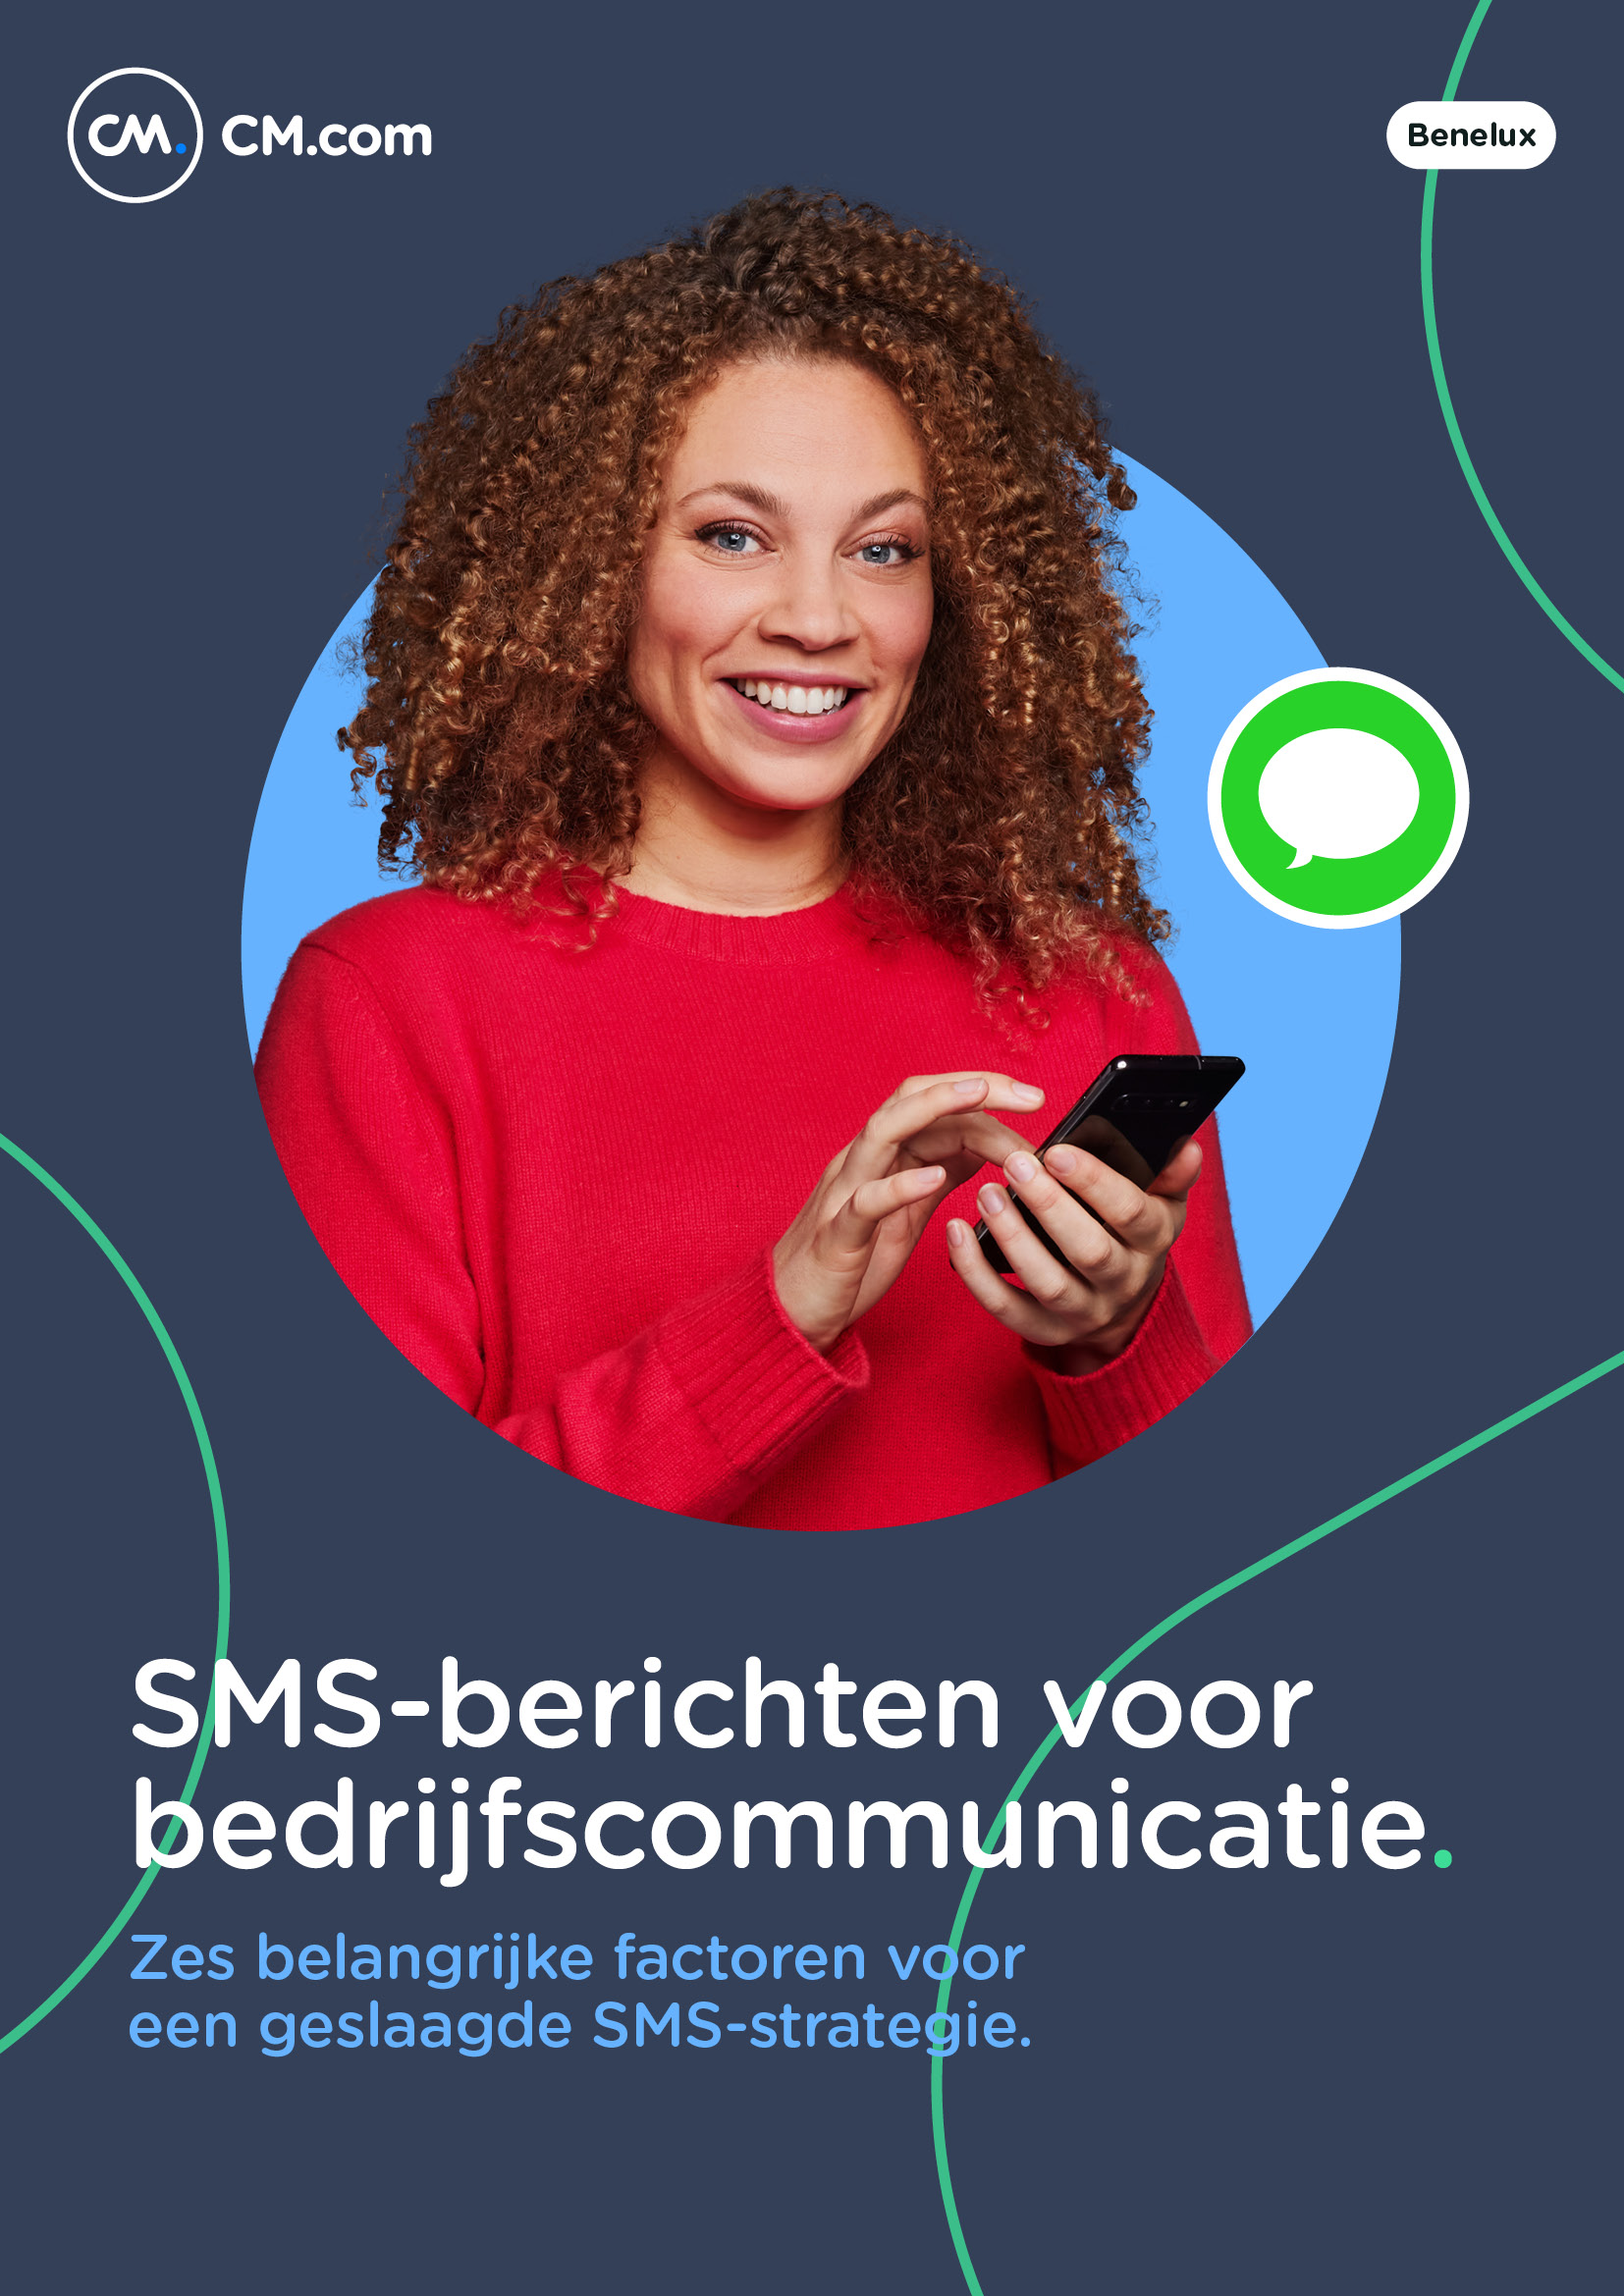 SMS-berichten voor bedrijfscommunicatie